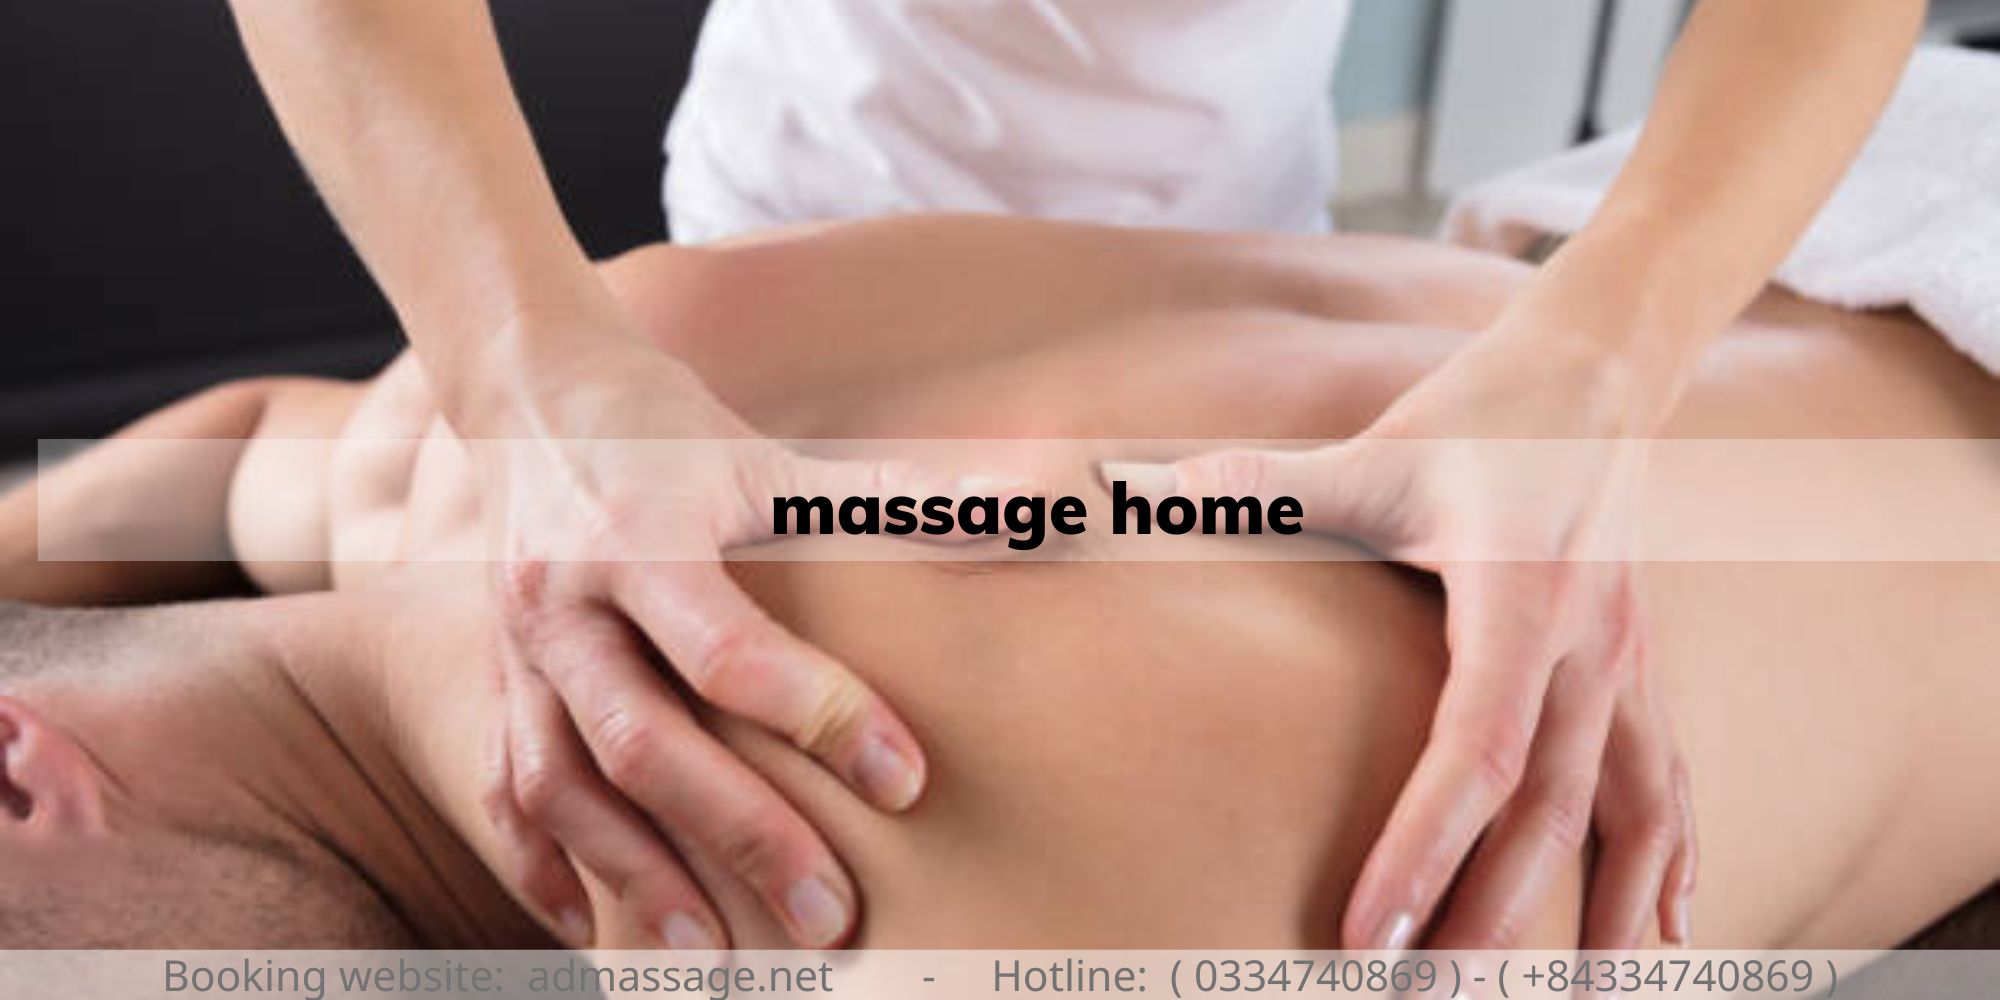 massage home